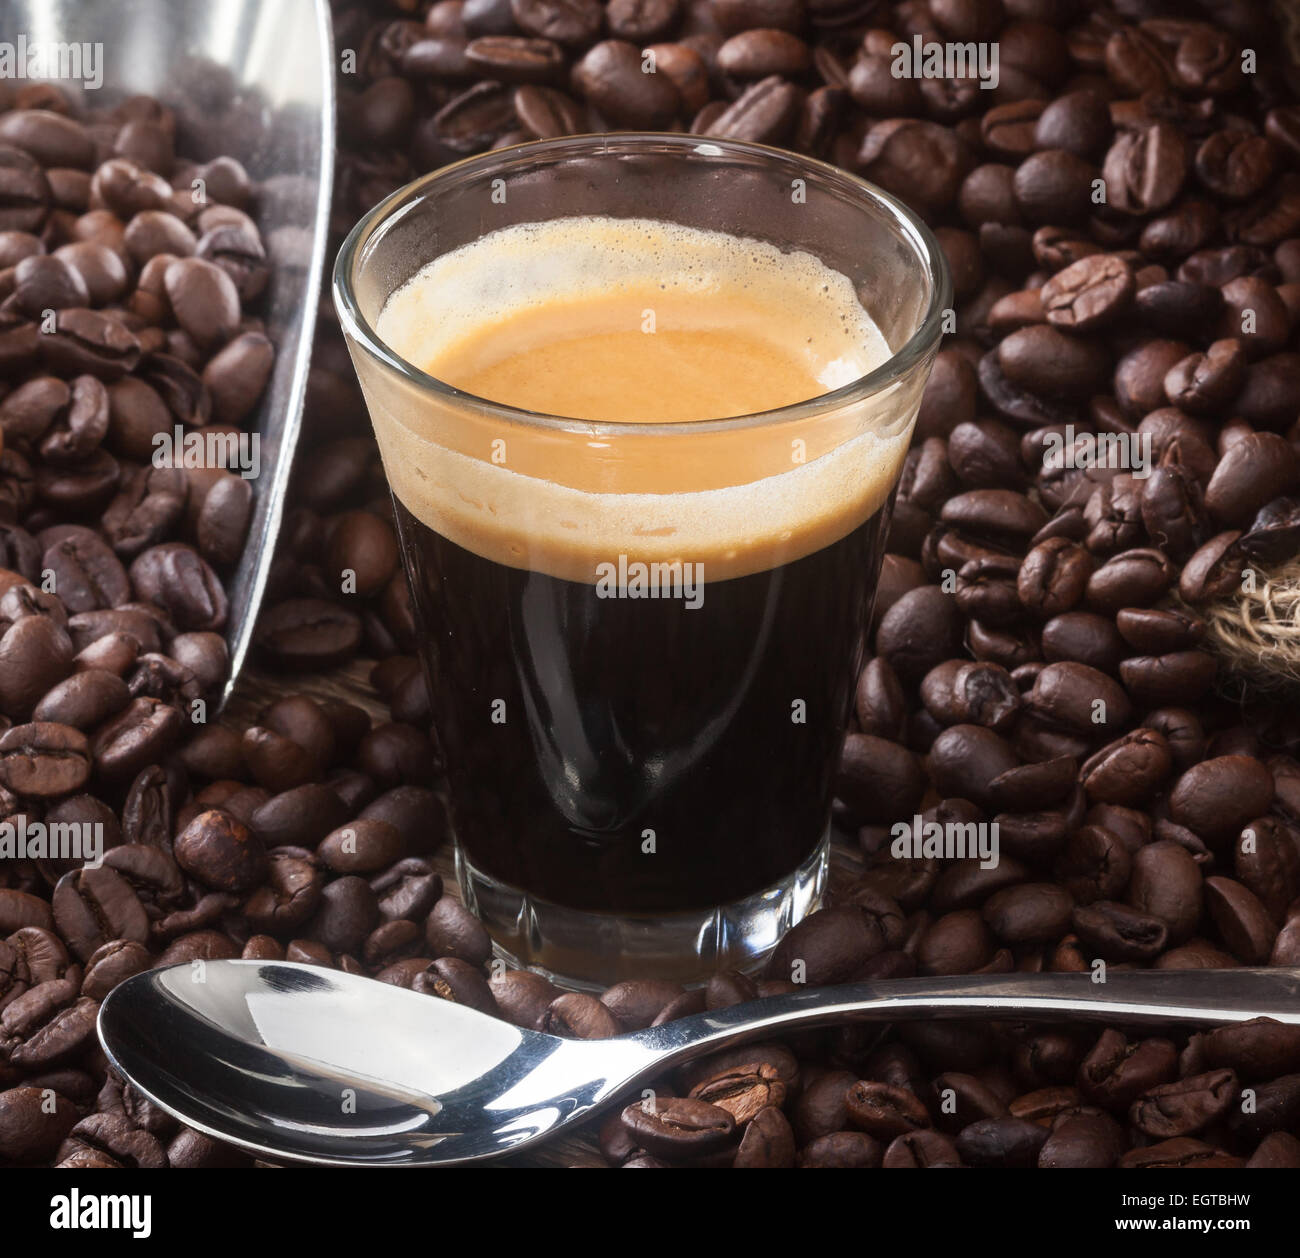 https://c8.alamy.com/compes/egtbhw/cafe-espresso-en-un-vaso-con-granos-de-cafe-sobre-la-mesa-de-madera-egtbhw.jpg